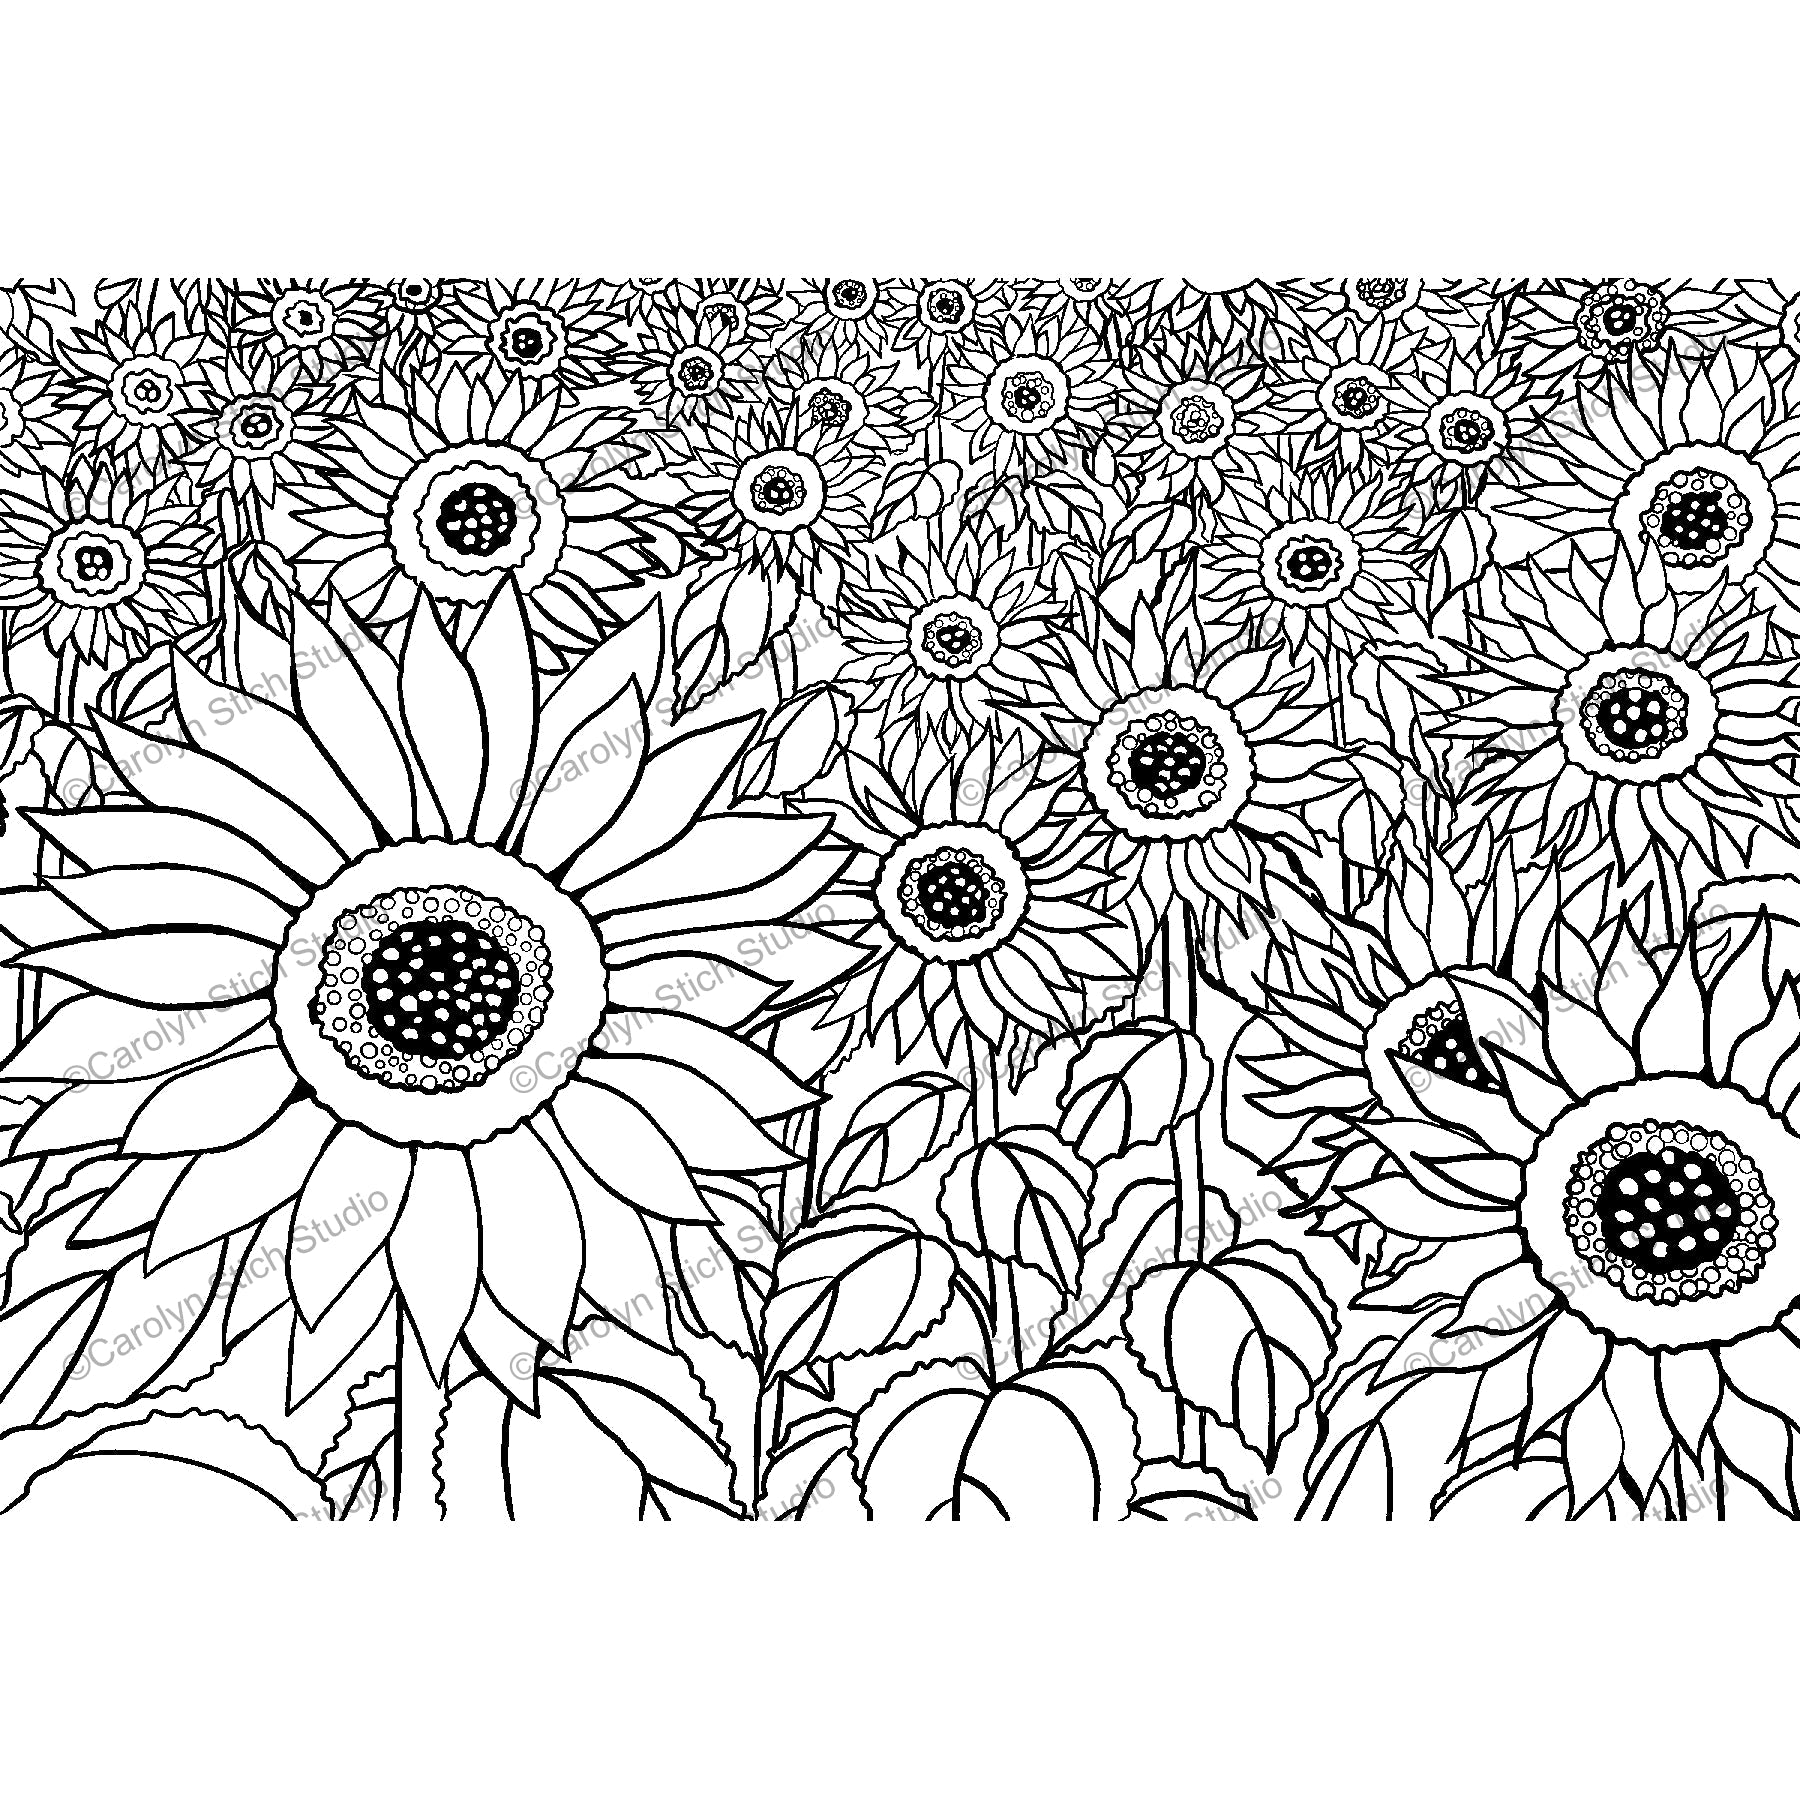 Sunflower Field, rug hooking pattern